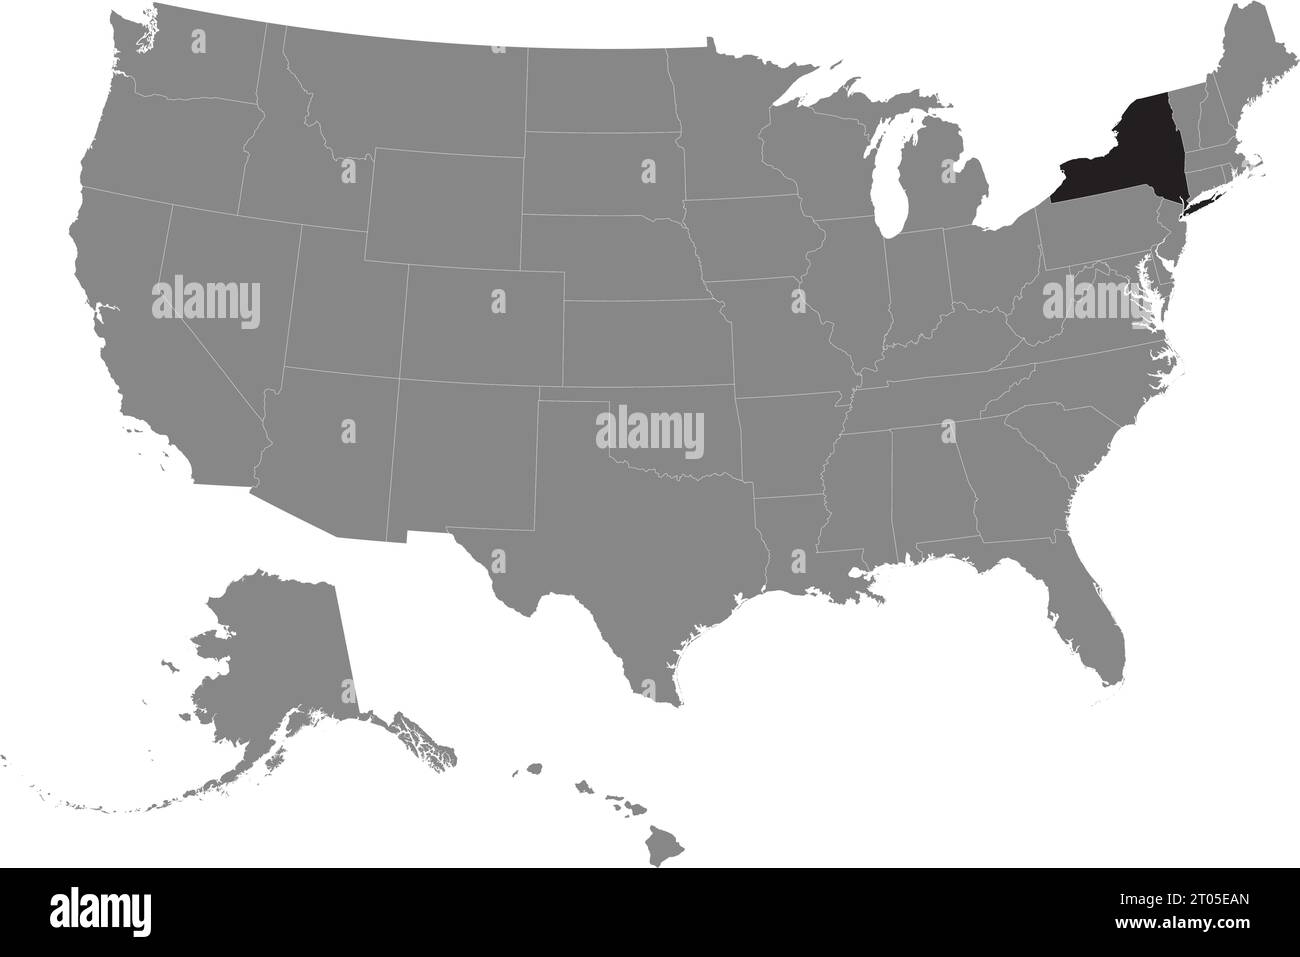 Schwarze CMYK-Bundeskarte von NEW YORK in detaillierter grauer, leerer politischer Karte der Vereinigten Staaten von Amerika auf transparentem Hintergrund Stock Vektor